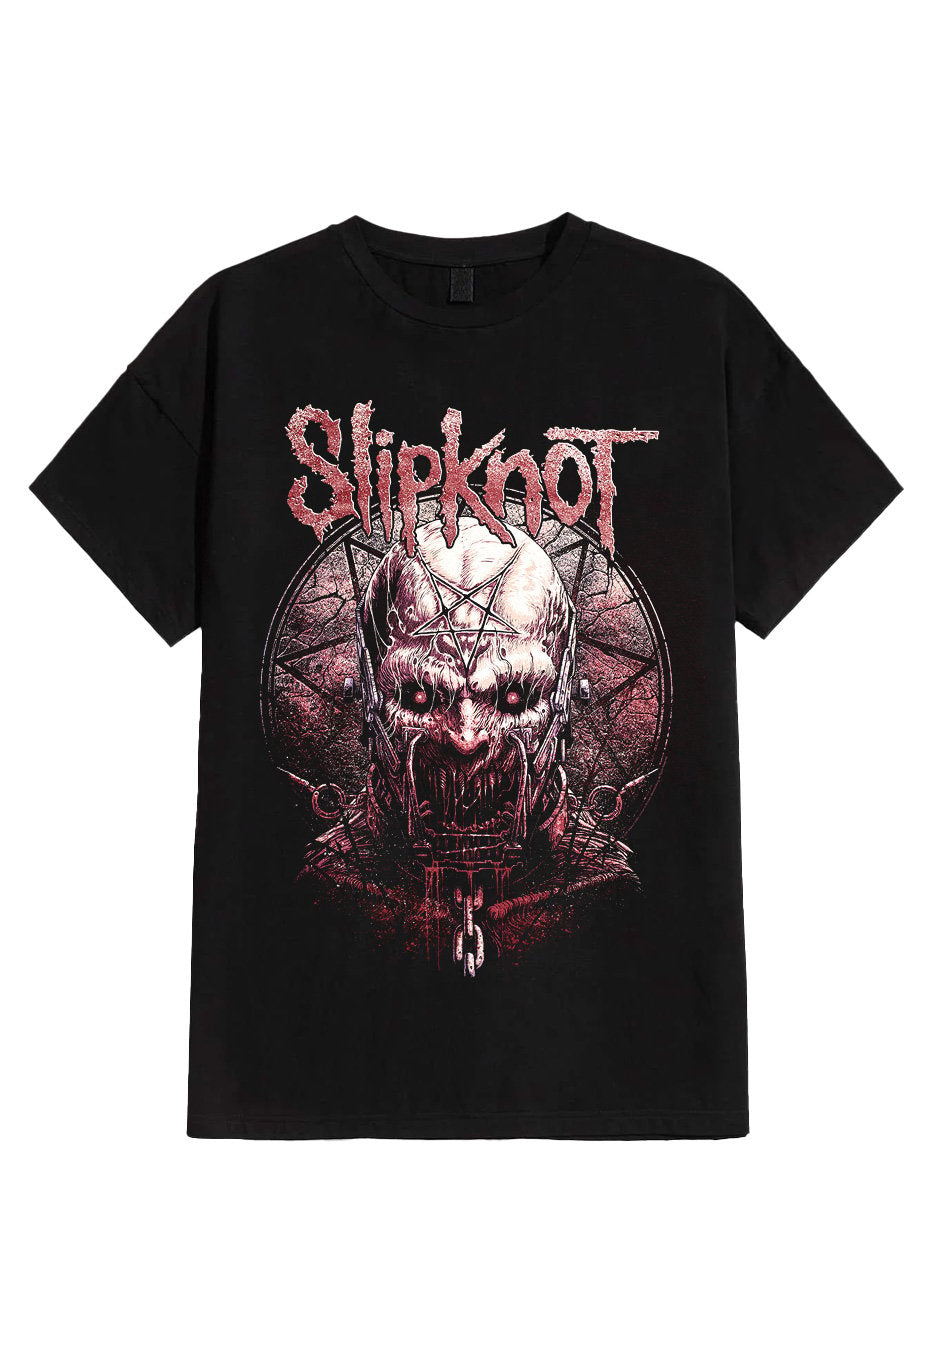 Slipknot - Slaughterer - T-Shirt